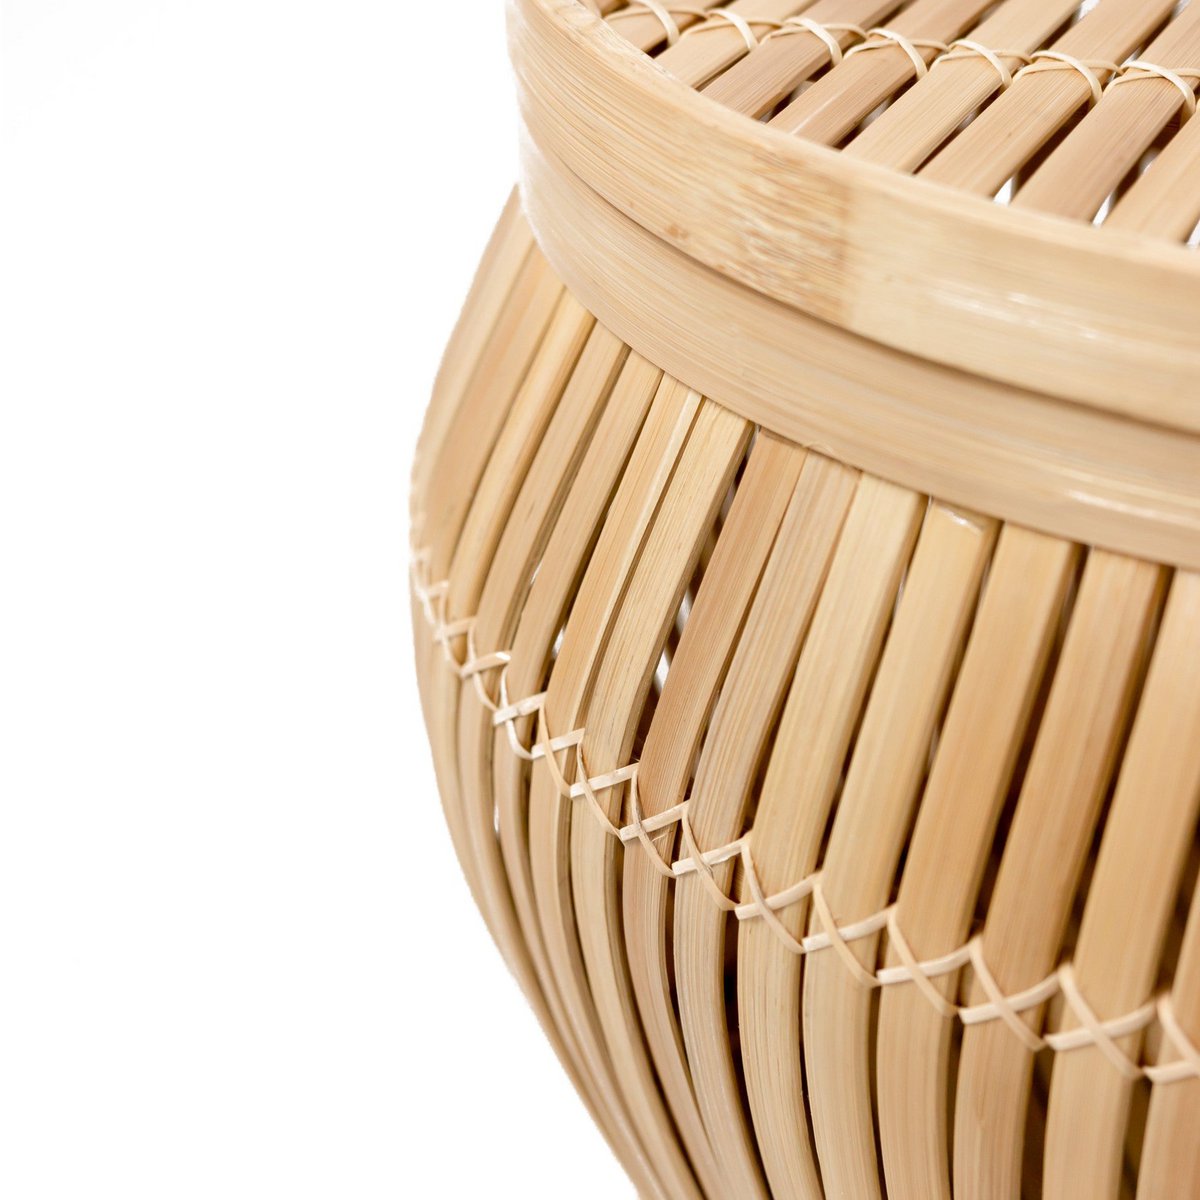 Beistelltisch /Tischkorb BATAVIA aus Bambus   Größe: M